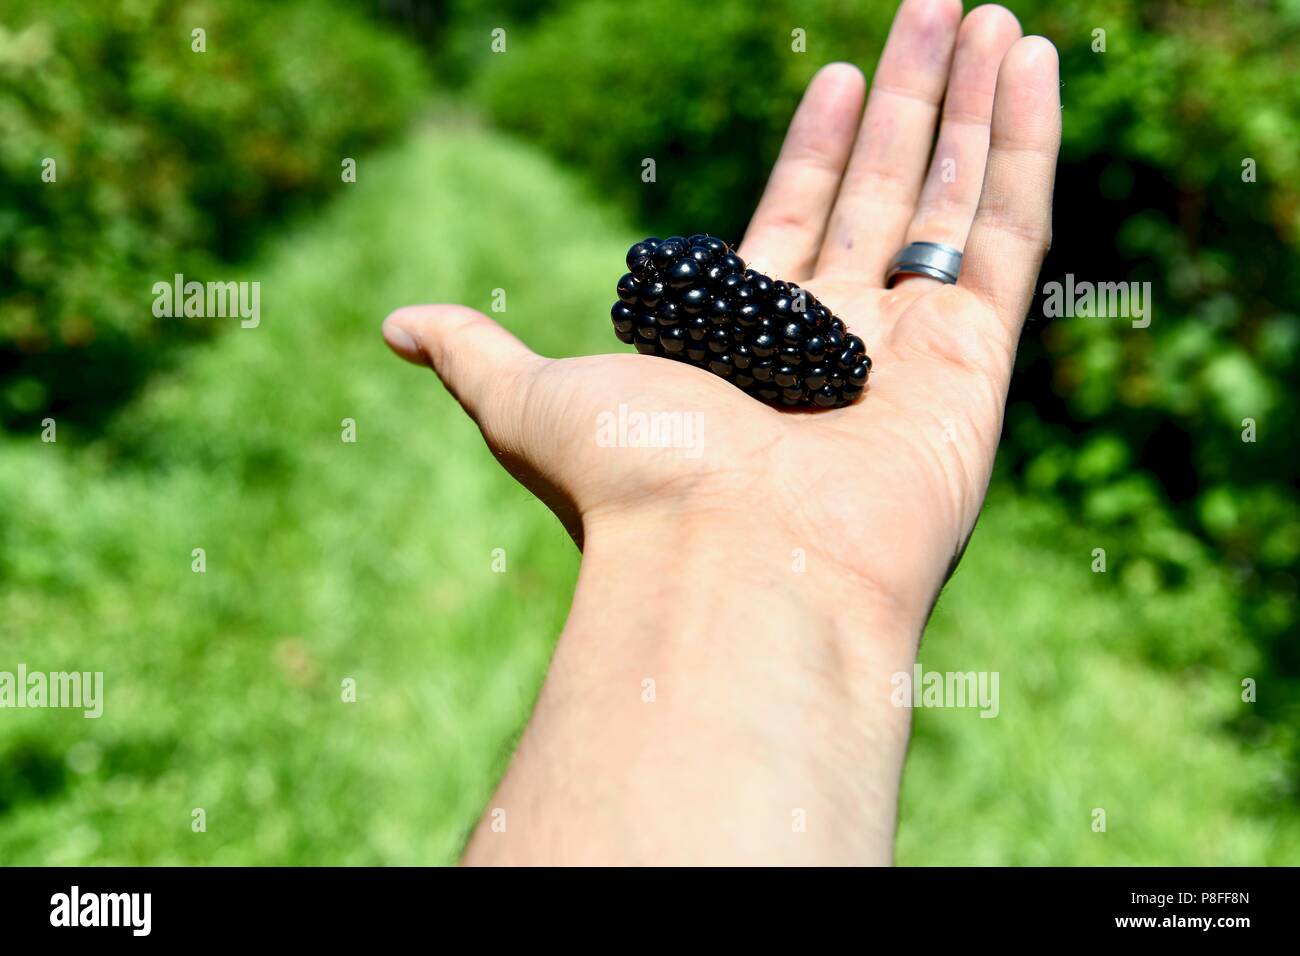 Farmer holding ripe blackberry in hand Stock Photo